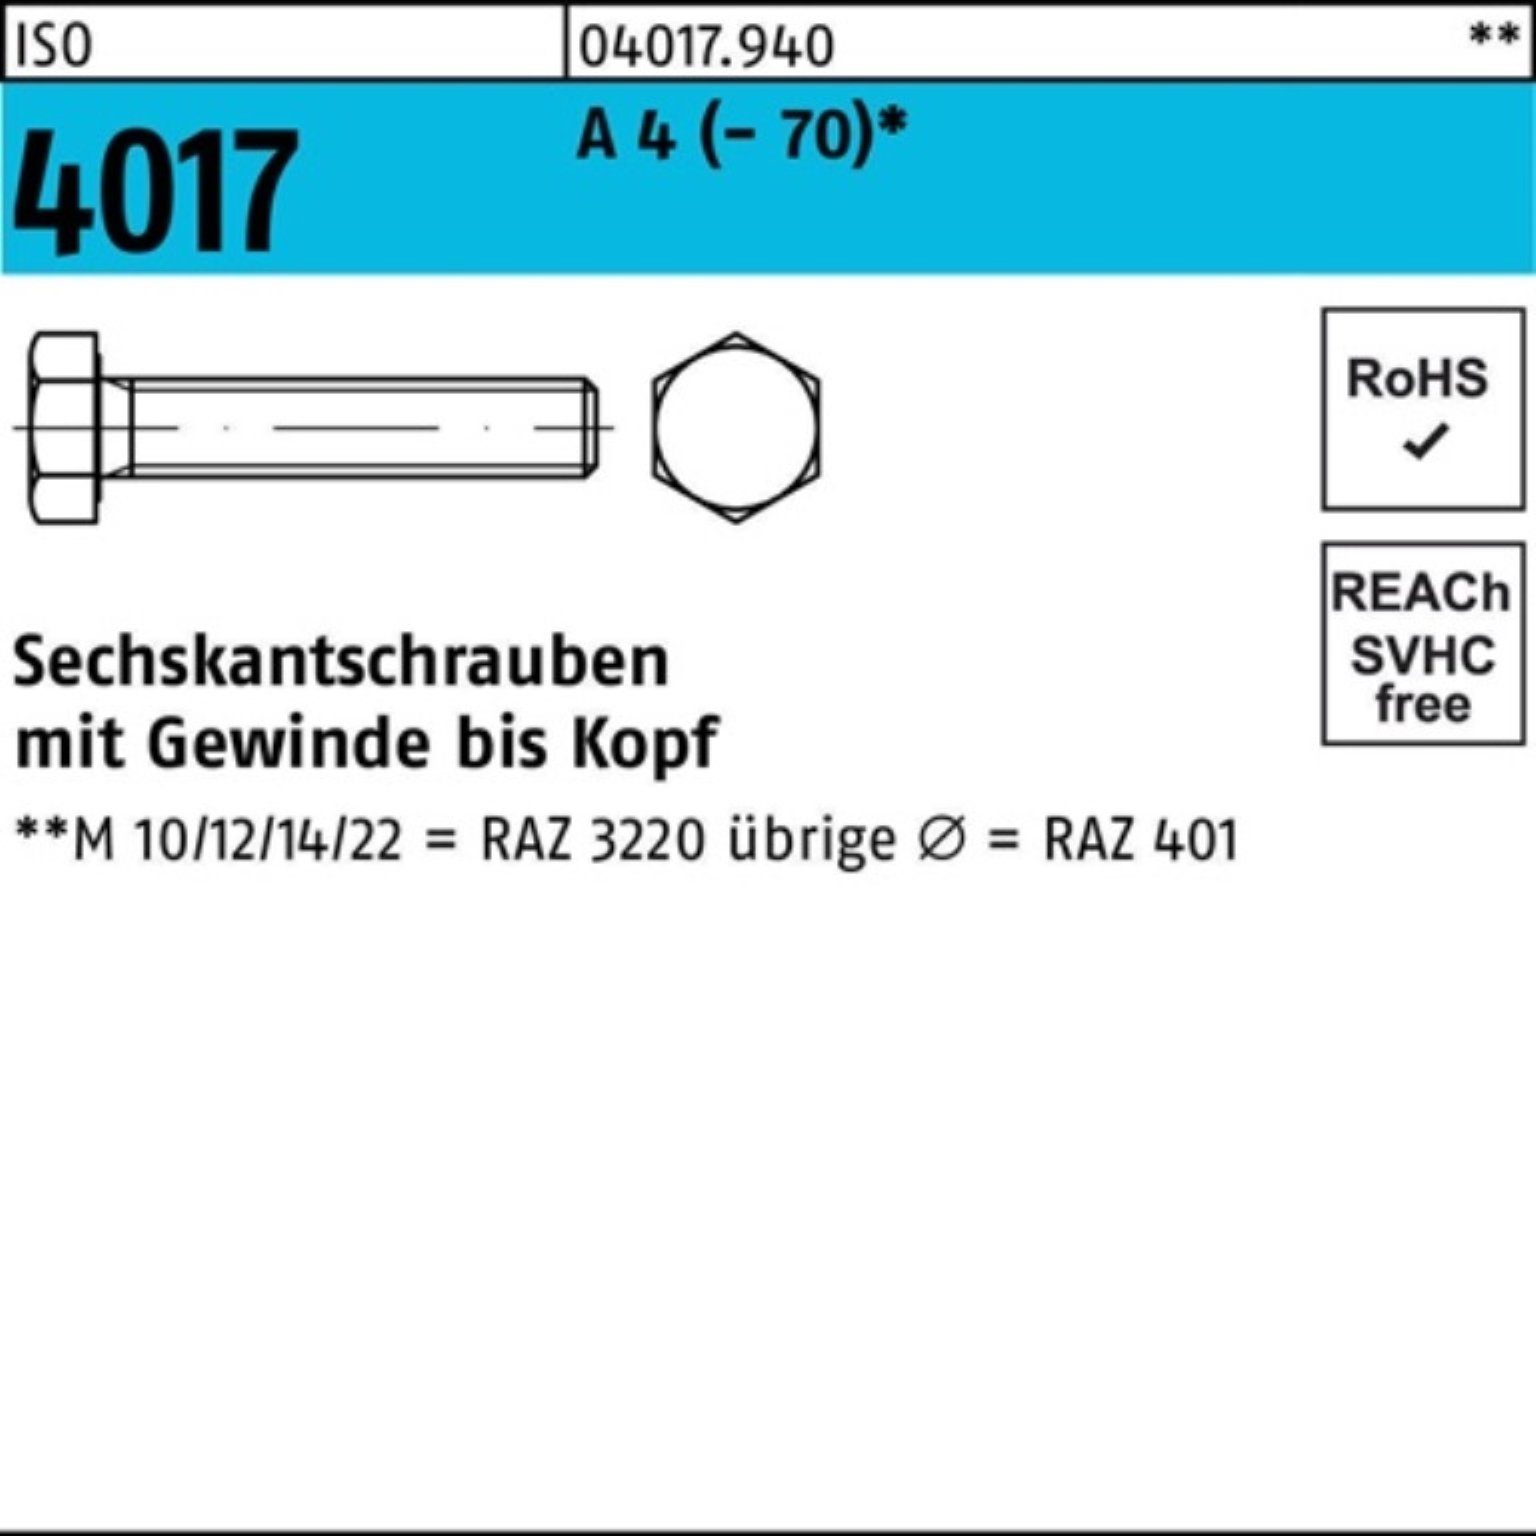 Bufab Sechskantschraube 100er Pack Sechskantschraube ISO 4017 VG M16x 45 A 4 (70) 50 Stück